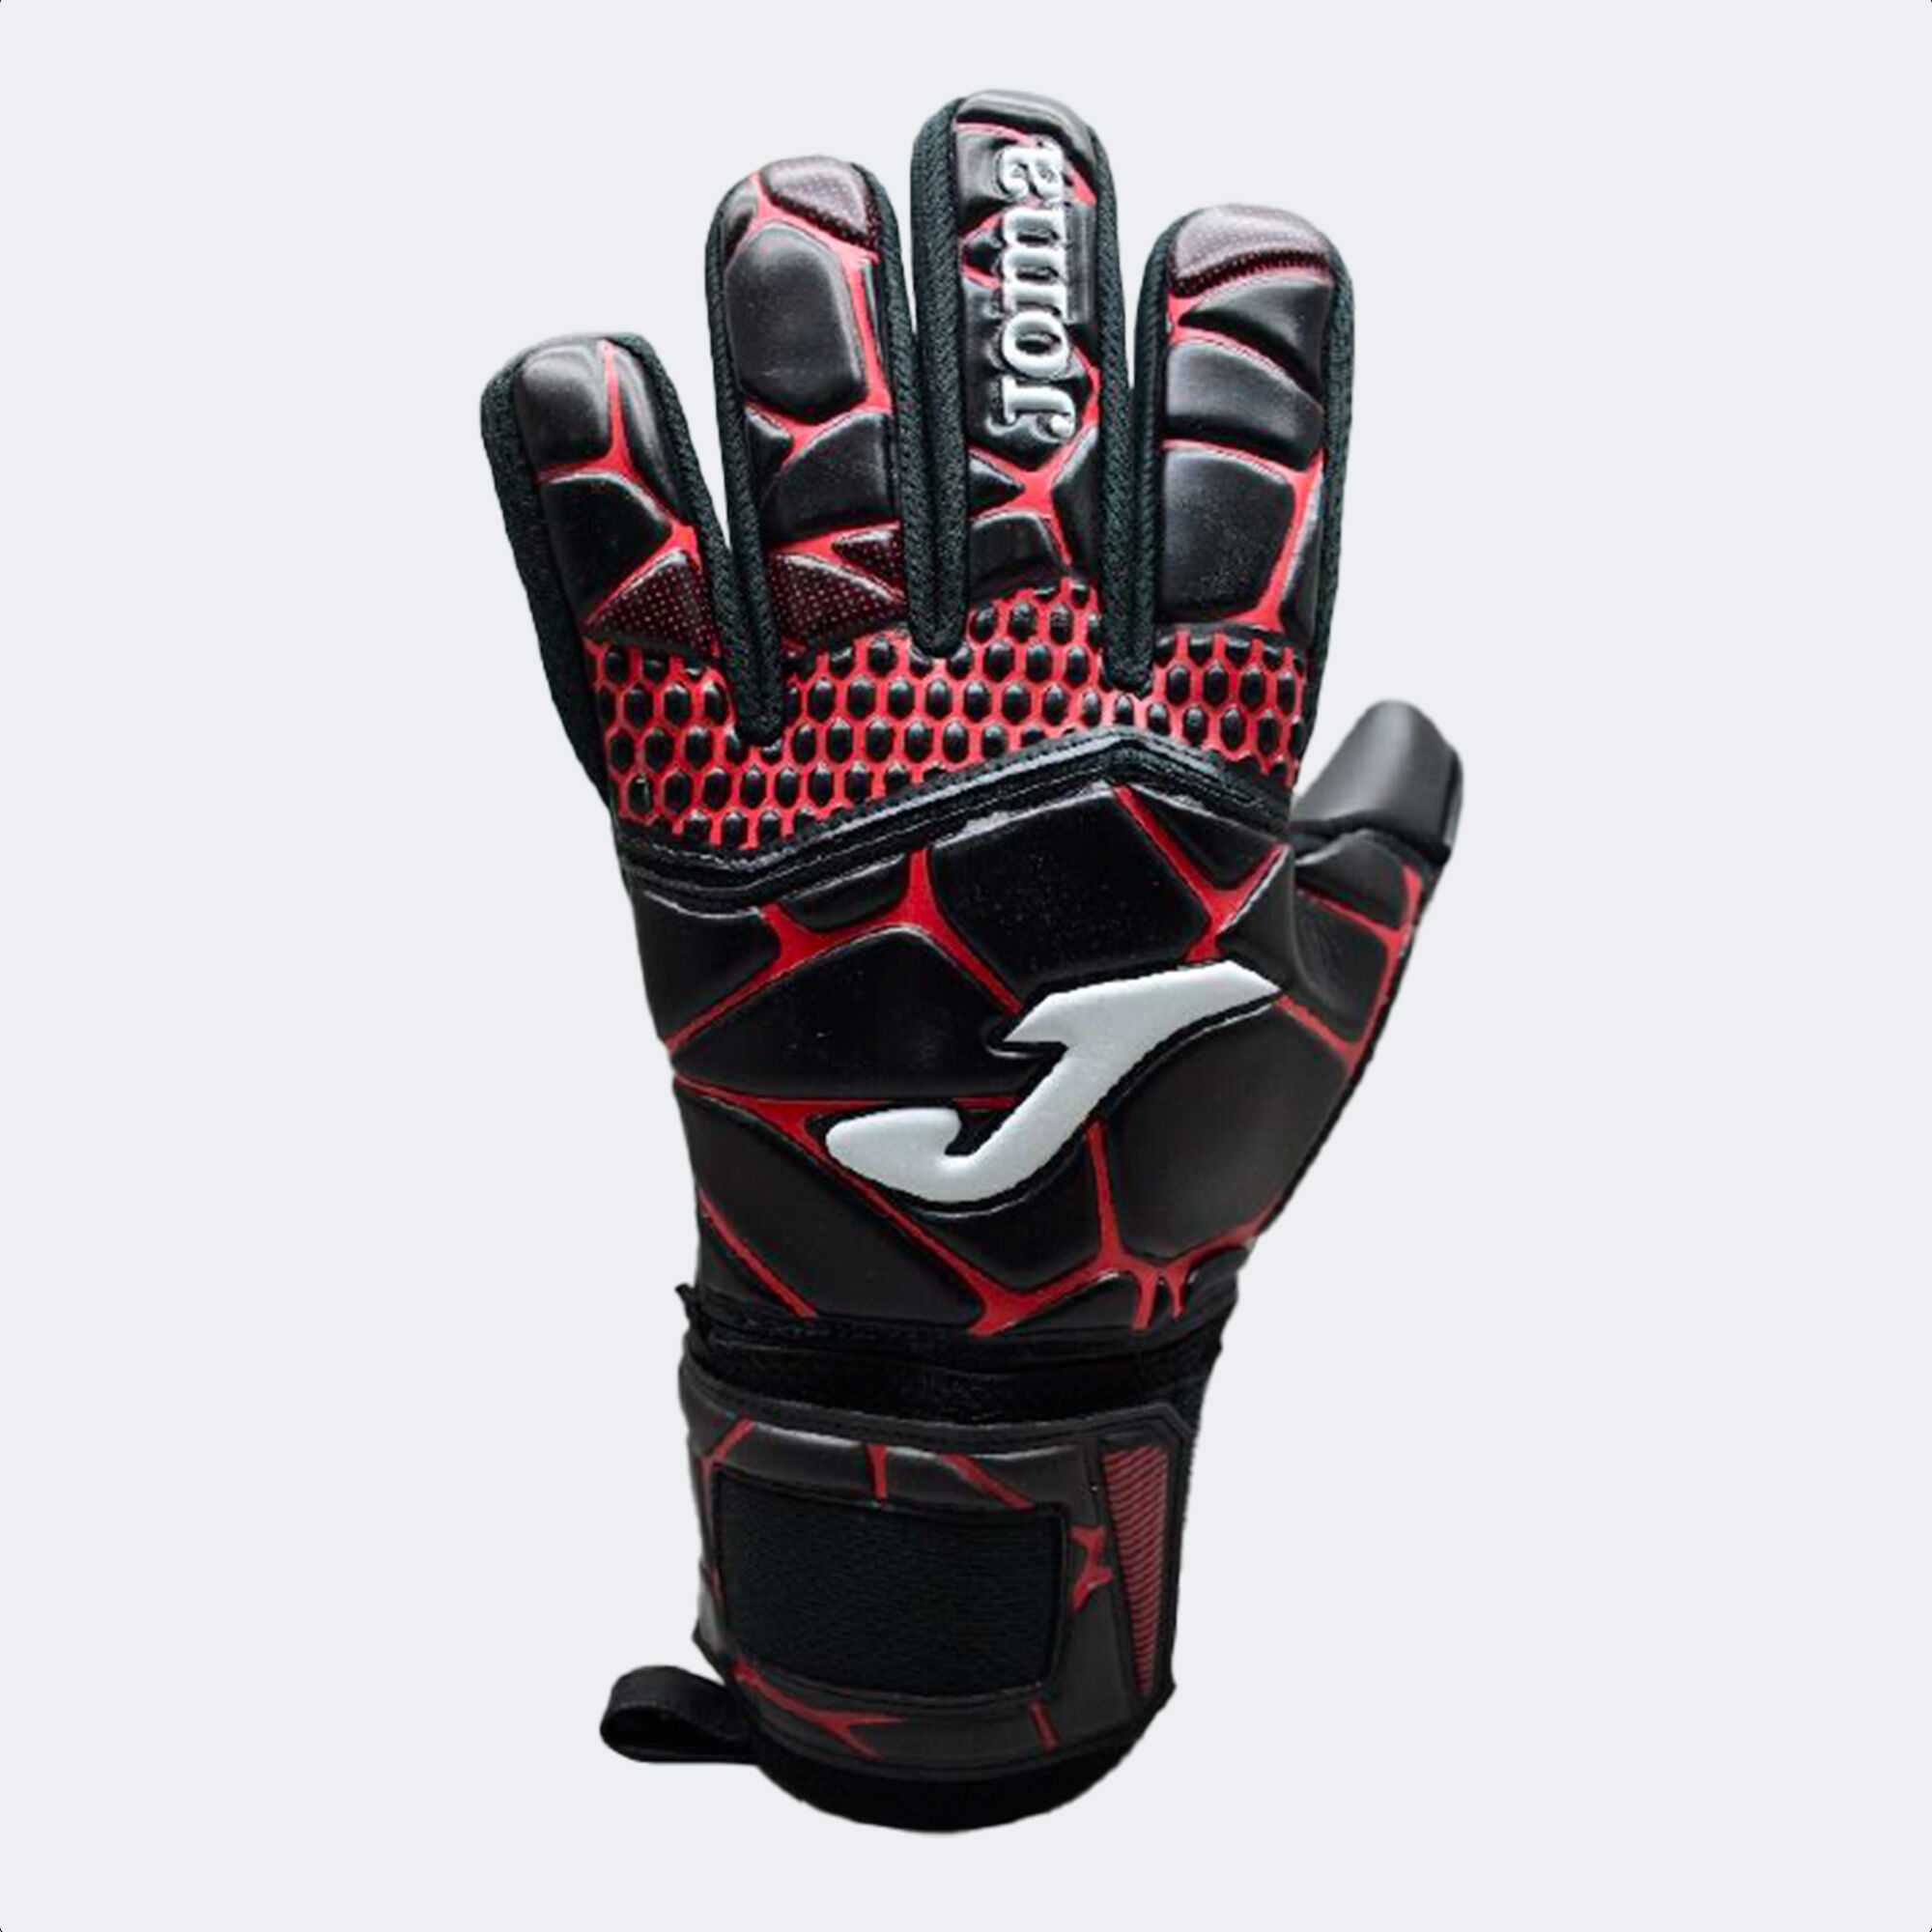 Football goalkeeper gloves Gk-Pro black red